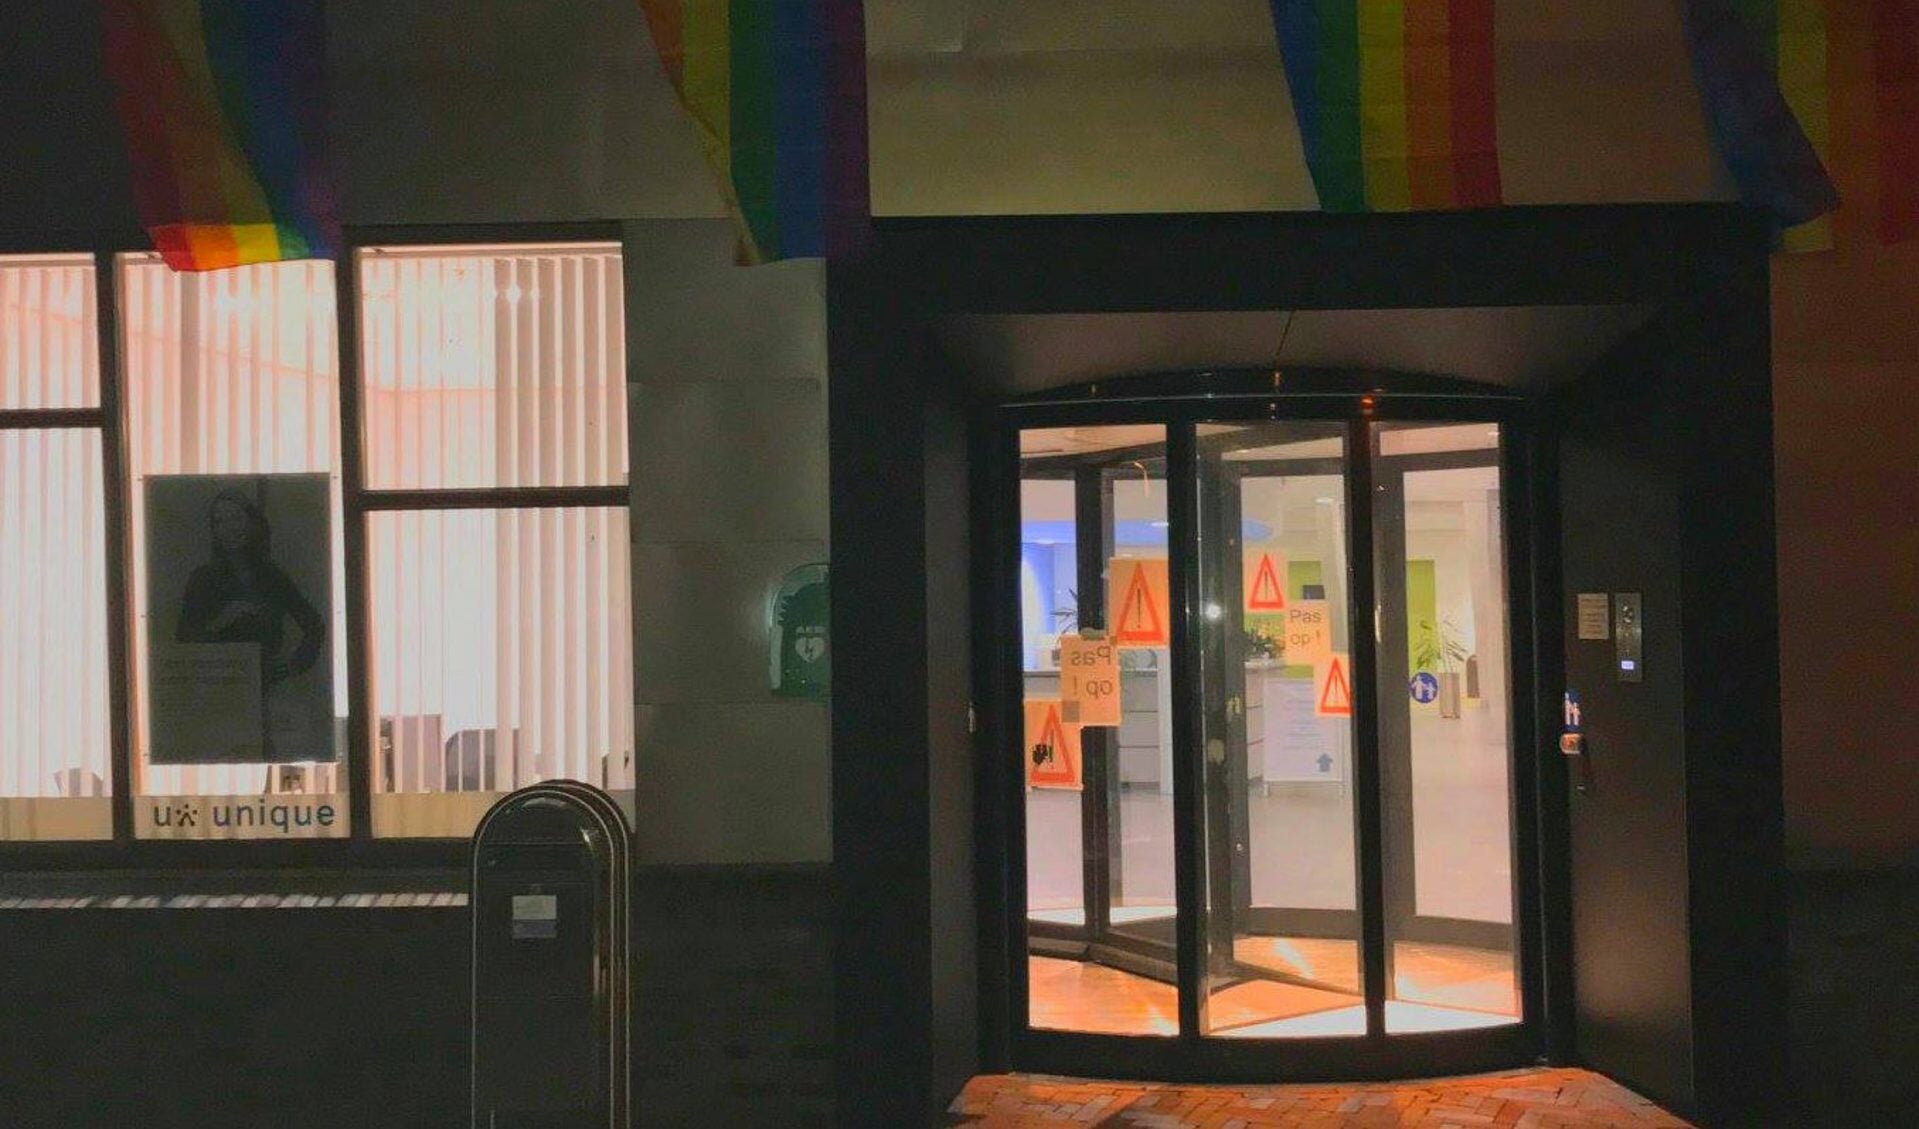 Tcoh (even) regenboogvlaggen op gemeentehuis